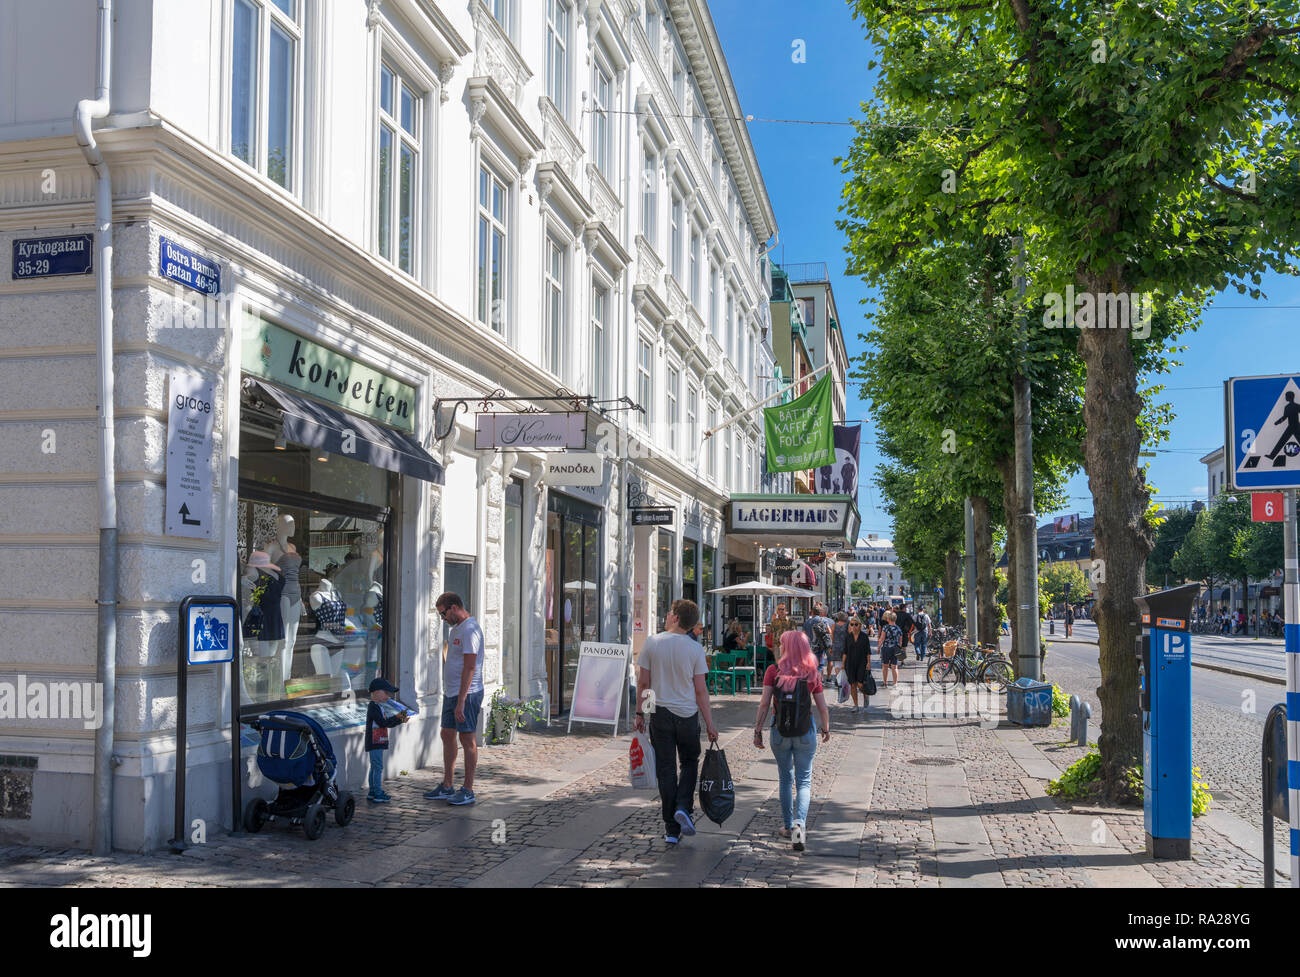 Geschäfte und Läden auf Östra Hamngatan im Zentrum der Stadt, Gothenburg (Göteborg), Schweden Stockfoto